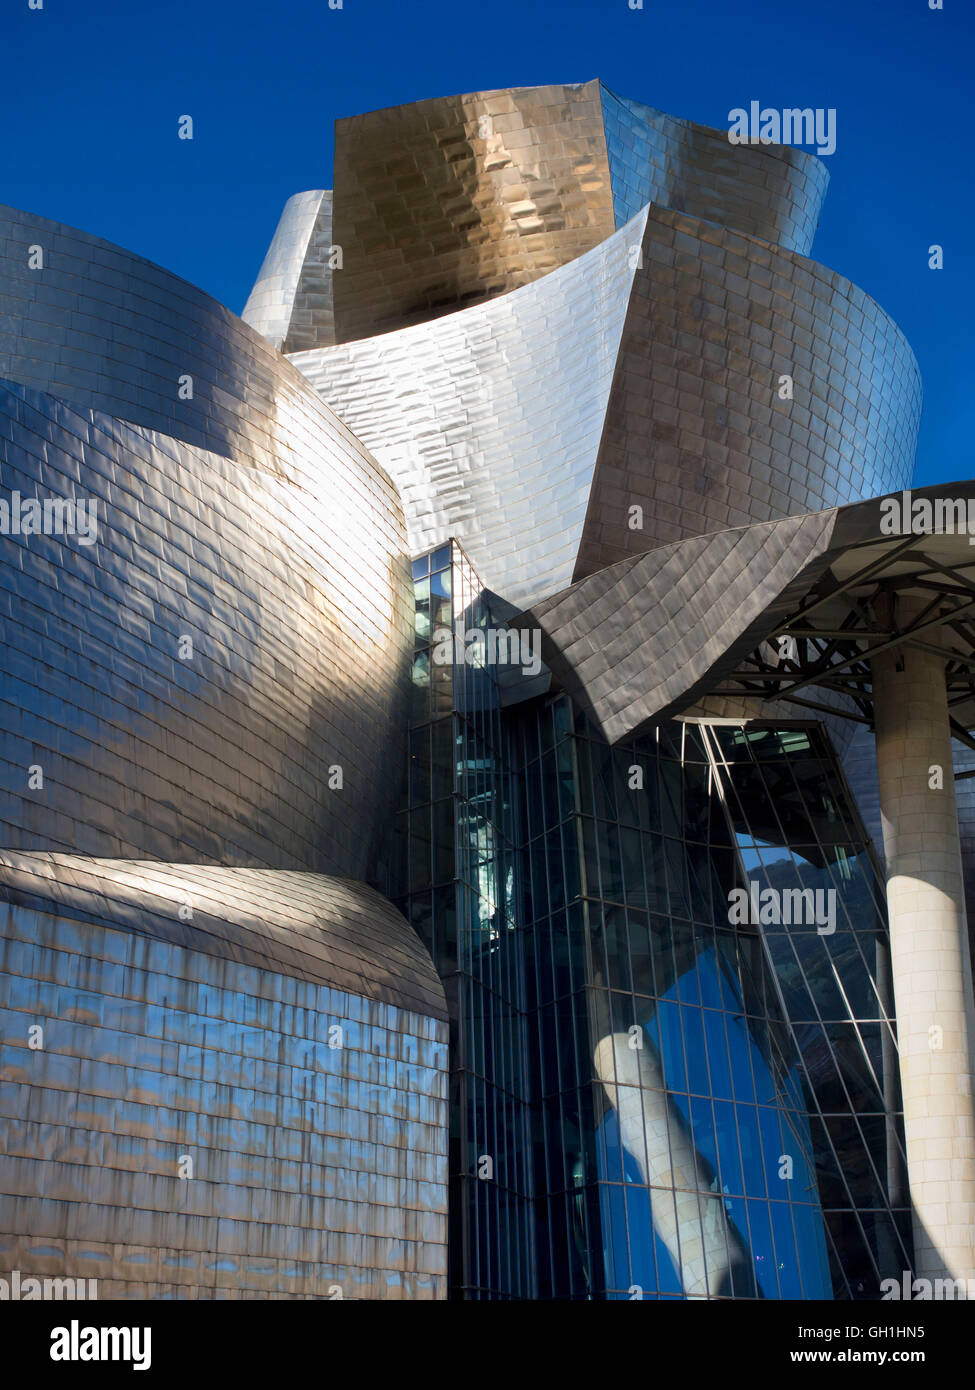 The iconic Guggenheim Museum in Bilbao, Spain 2 Stock Photo